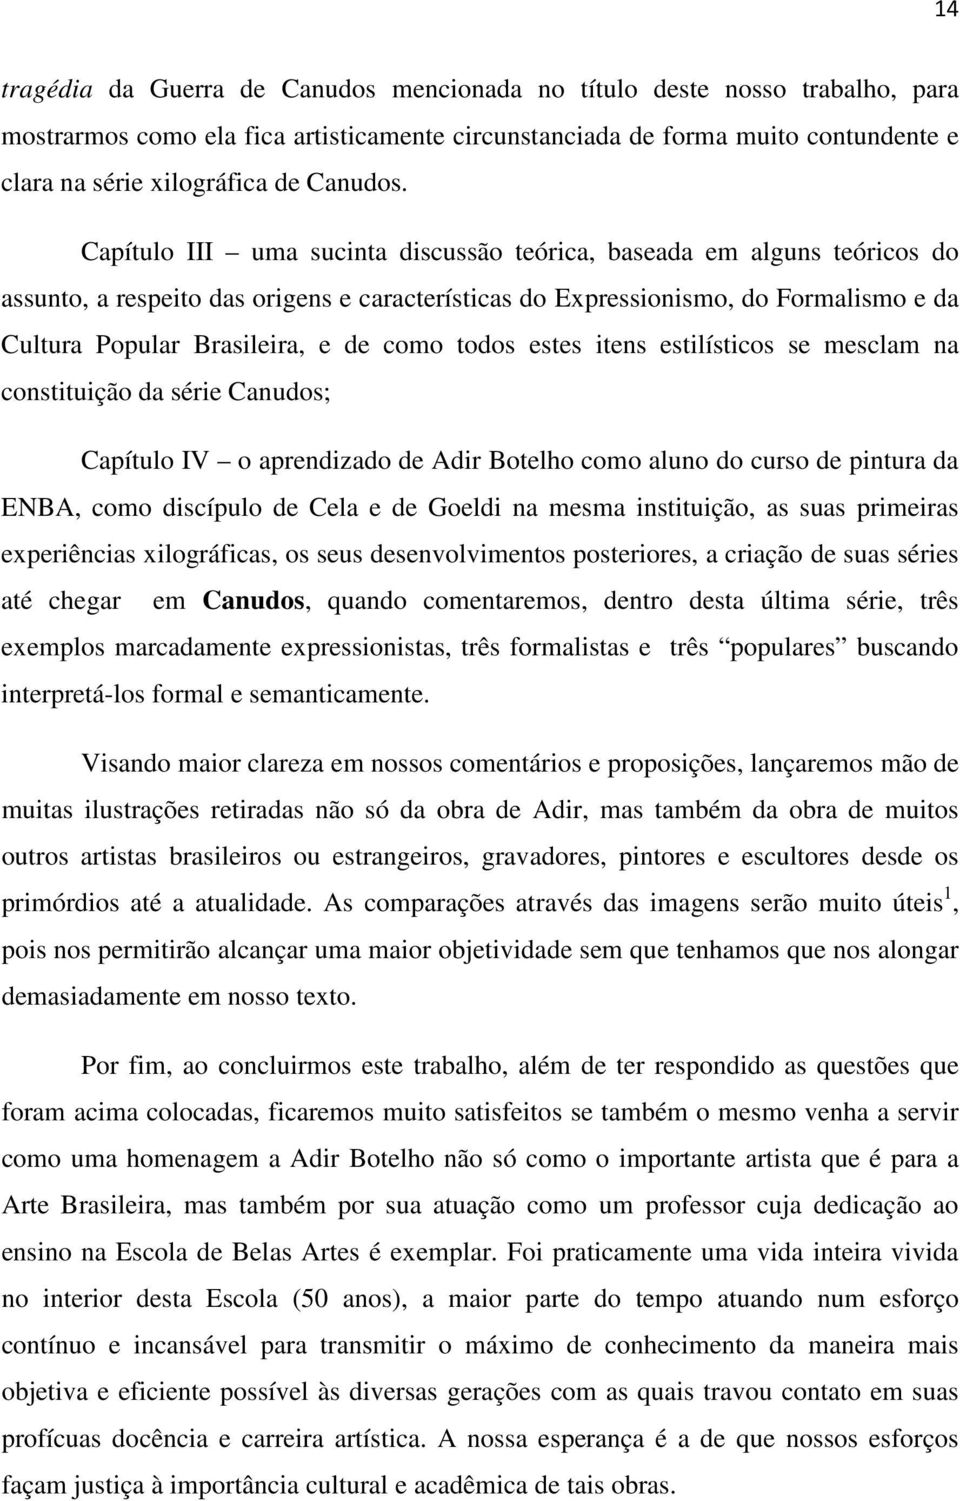 Capítulo III uma sucinta discussão teórica, baseada em alguns teóricos do assunto, a respeito das origens e características do Expressionismo, do Formalismo e da Cultura Popular Brasileira, e de como